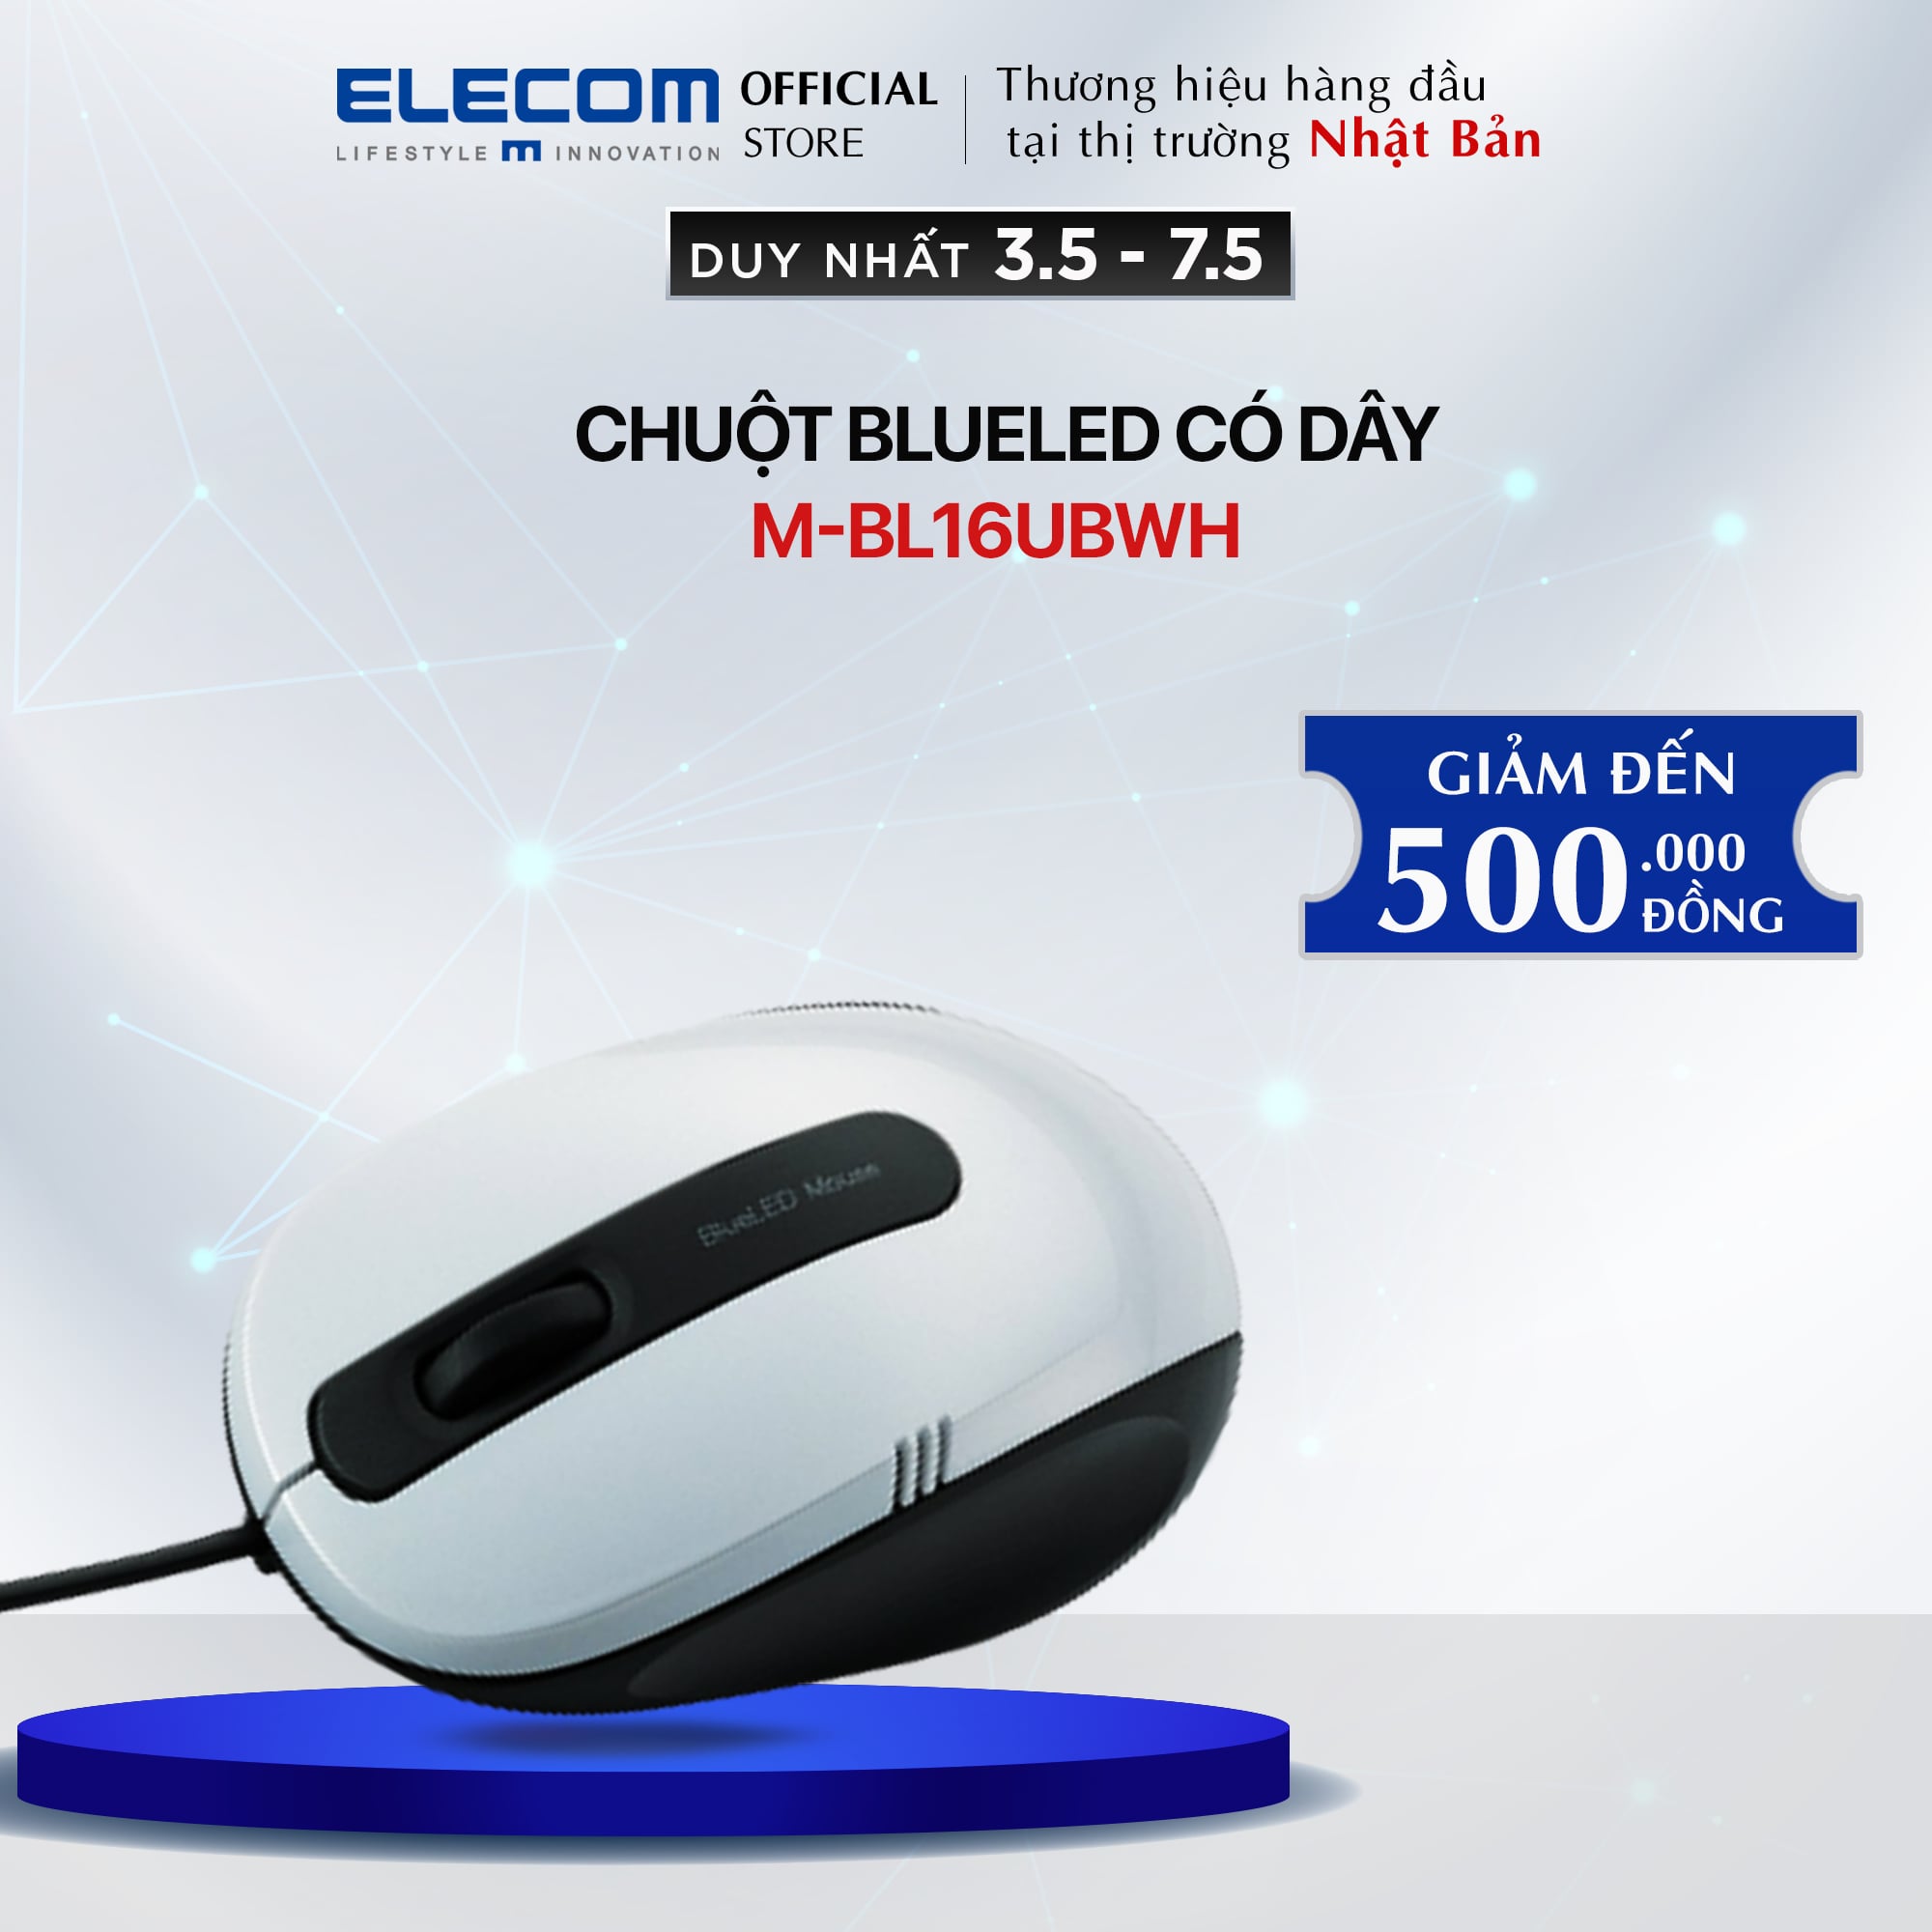 Chuột BlueLED ELECOM M-BL16UBWH - Hàng chính hãng